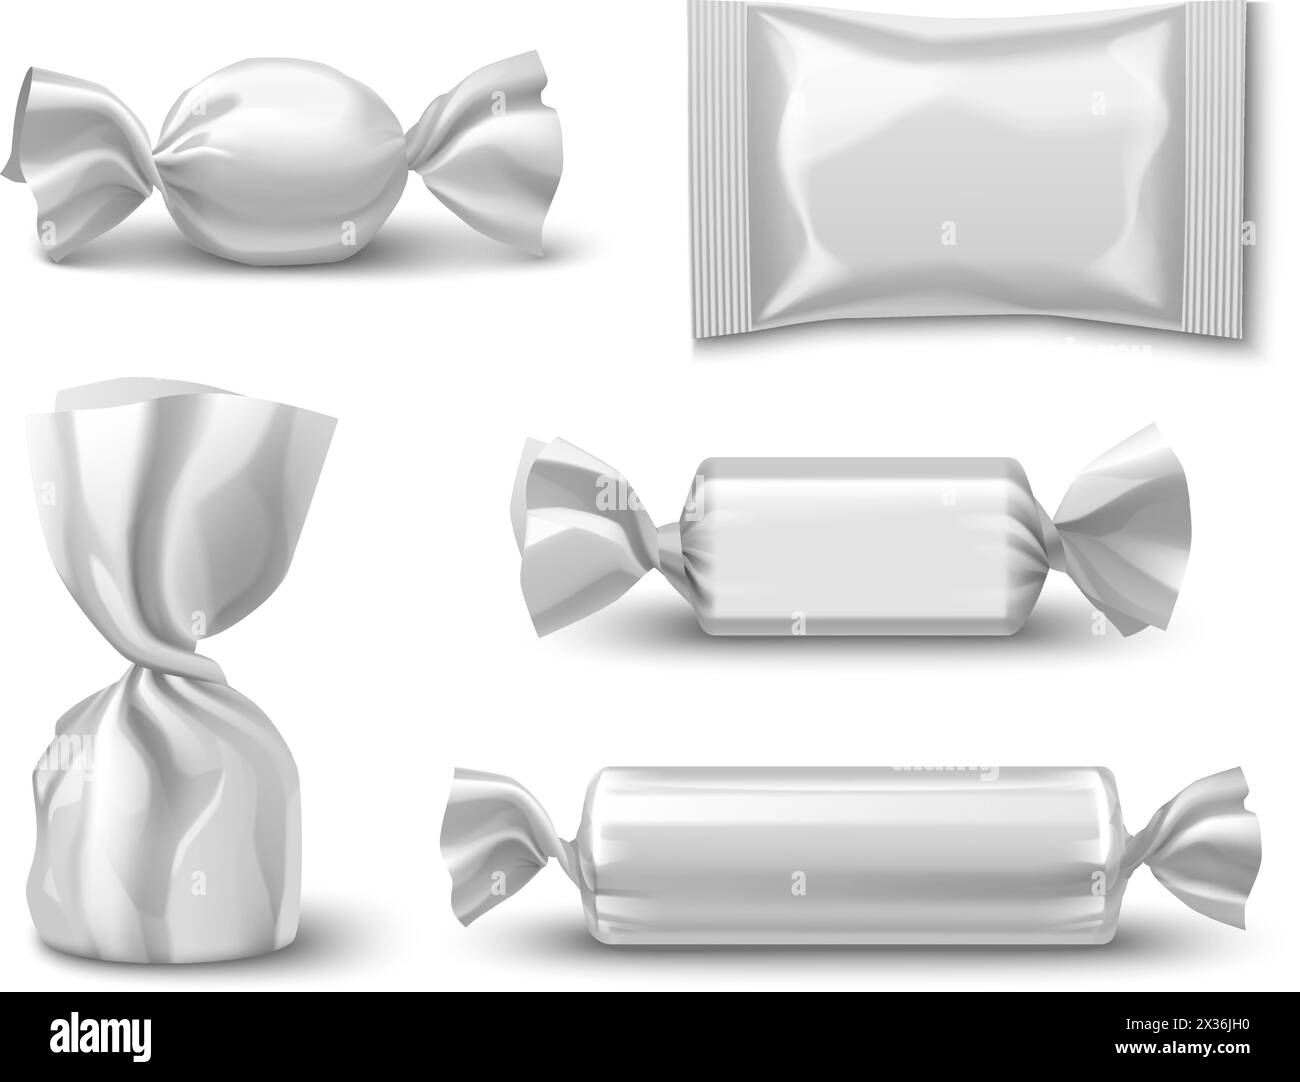 3D Süßschokolade Geschenkverpackung Mockup. Leere weiße, realistische Twist Pack-Verpackung für Bar-, Bonbon-, Keks- oder Karamell-Süßwaren-Design-Set. Folie Papier Zucker Snack Tasche Illustration Stock Vektor